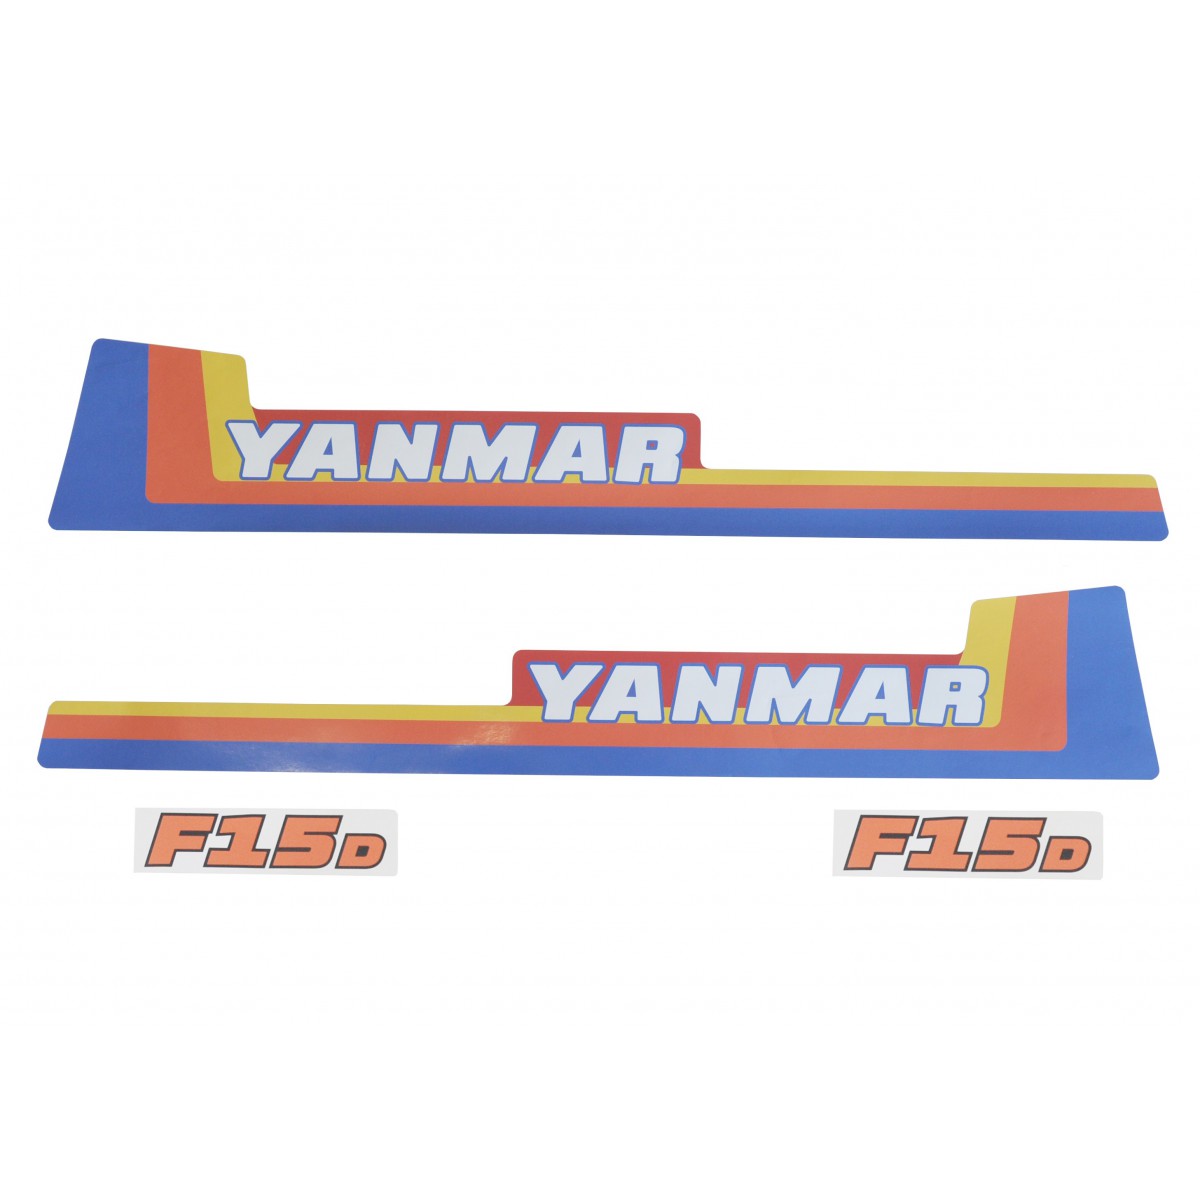 Naklejki Yanmar F15D